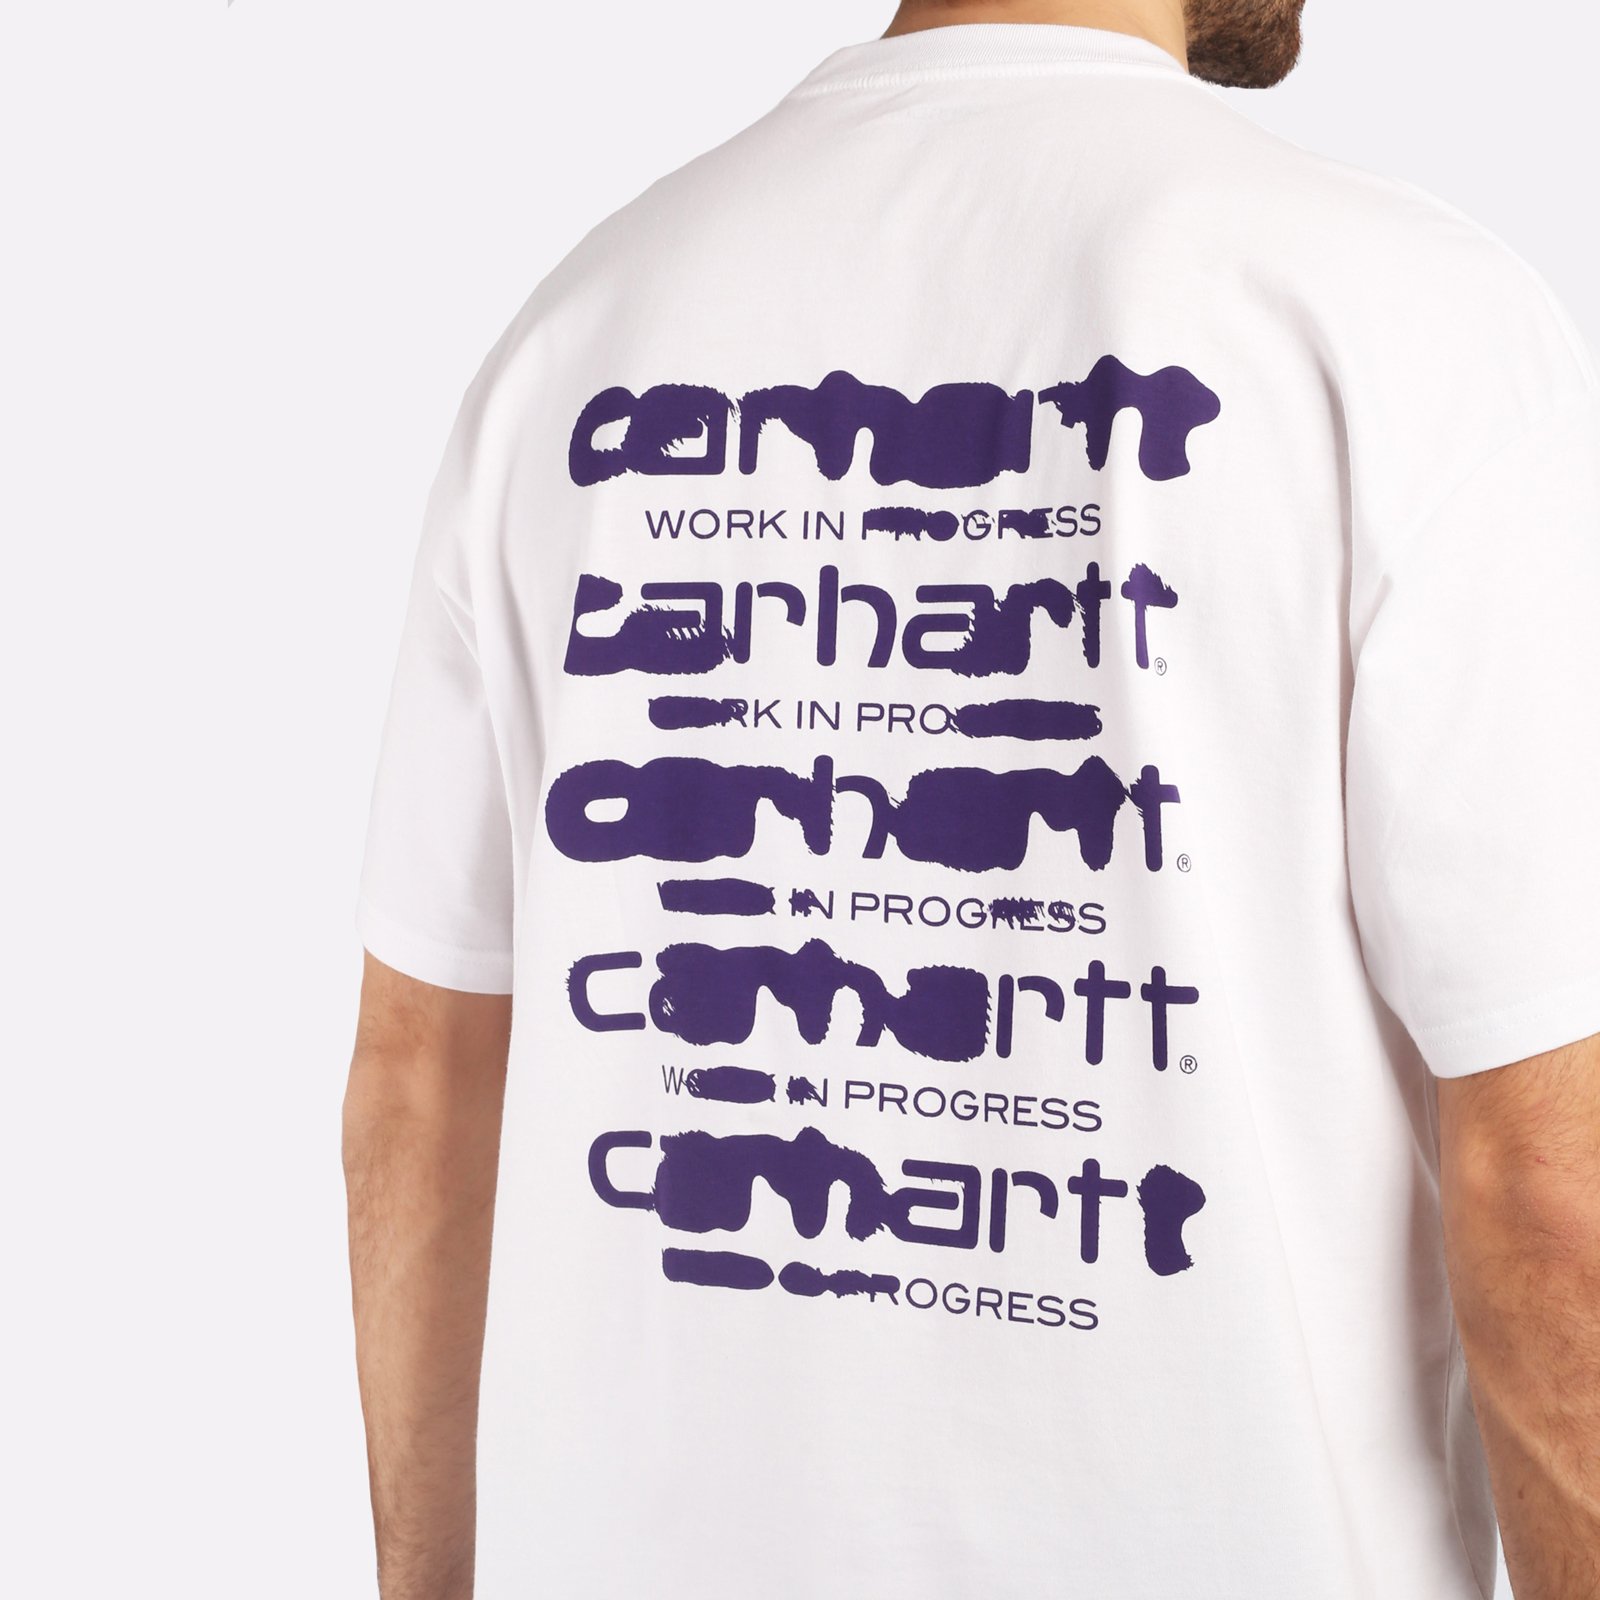 мужская футболка Carhartt WIP S/S Ink Bleed T-Shirt  (I032878-white/tyrian)  - цена, описание, фото 5